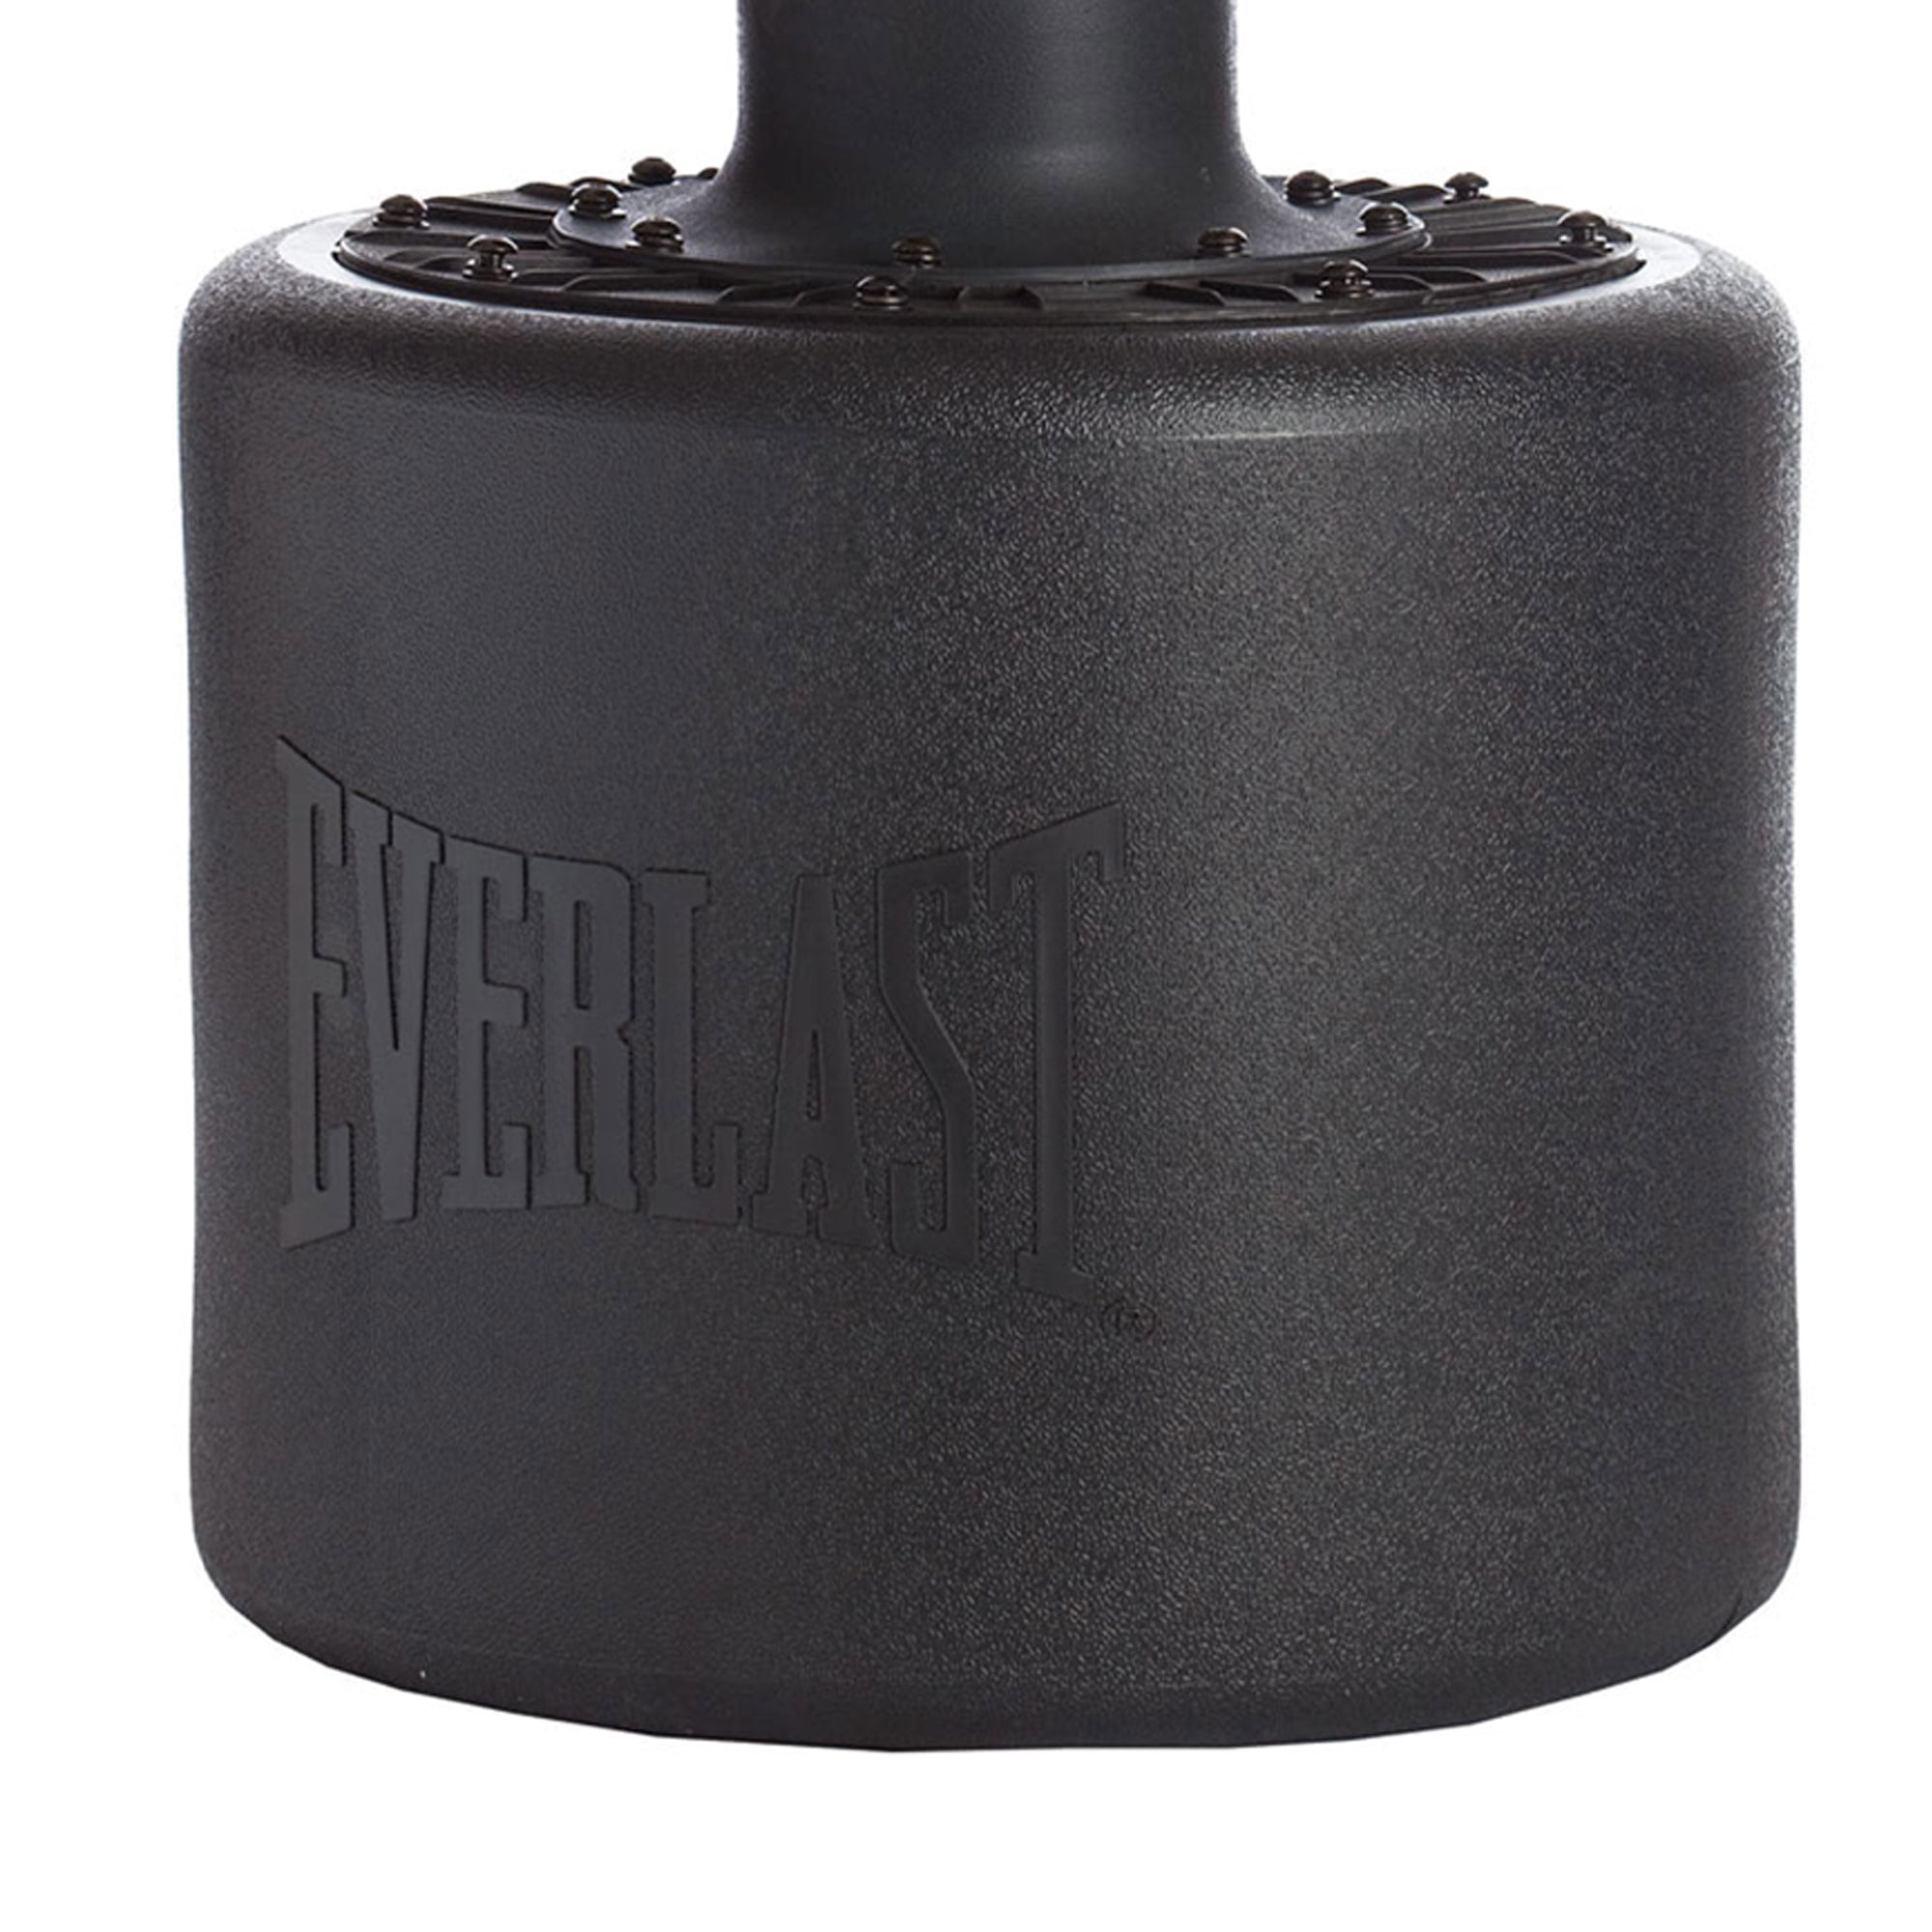 Everlast Powercore Freestanding Heavy Bag Black/White for sale online 